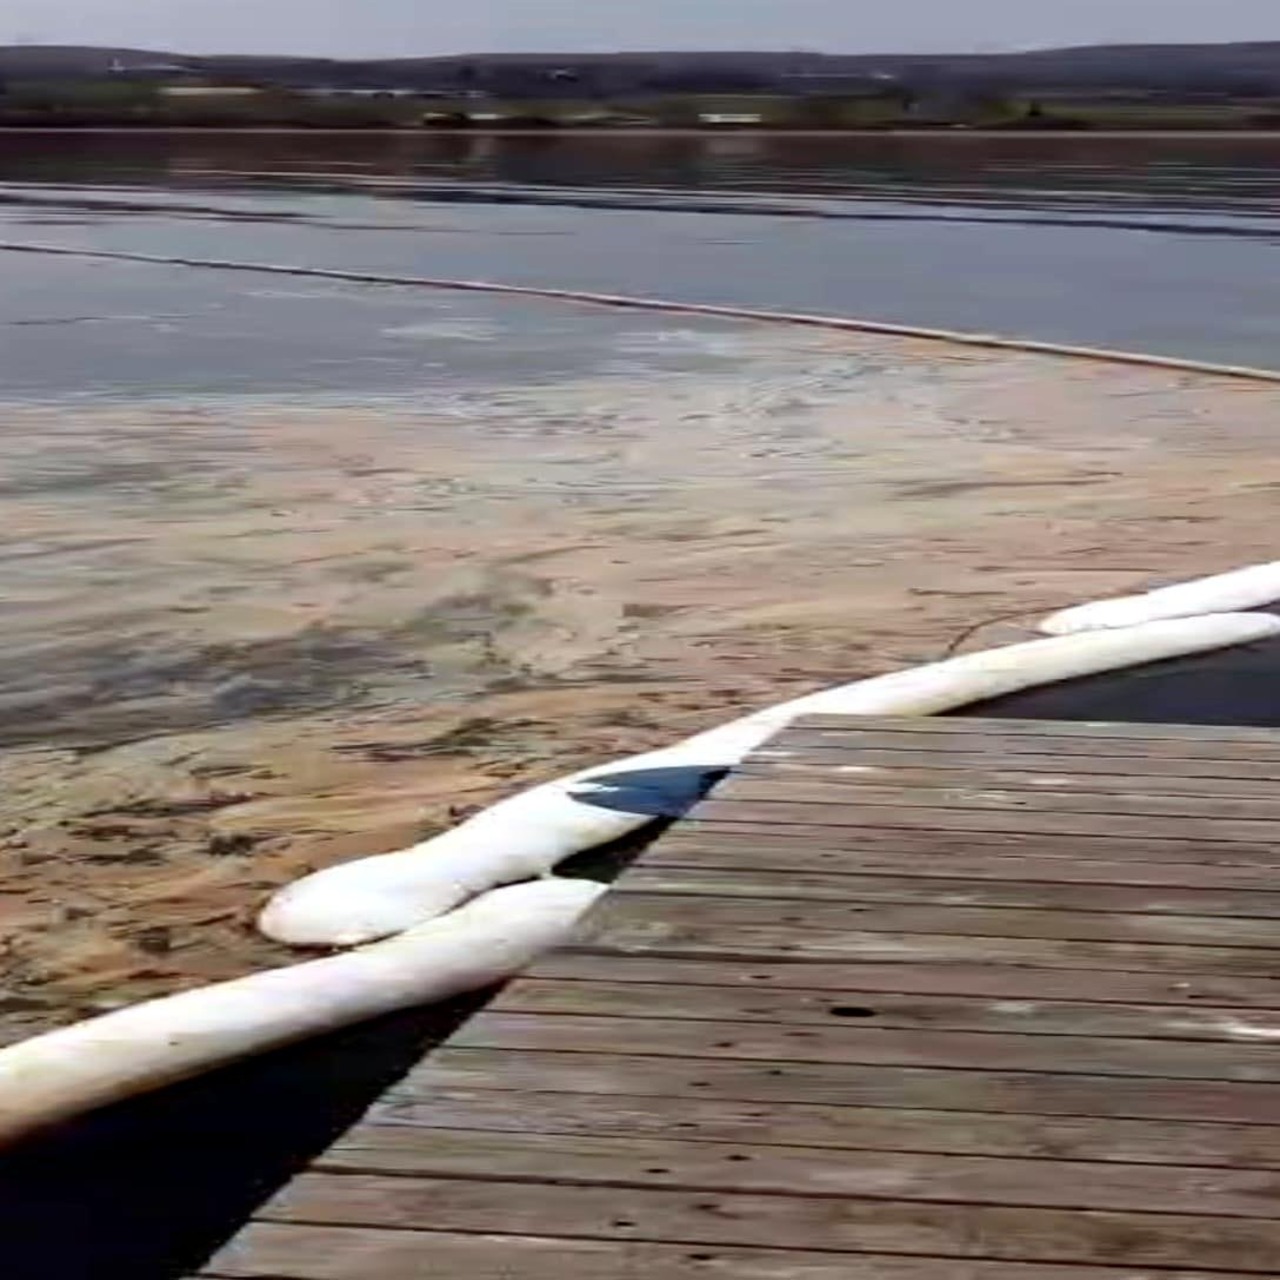 NATO boru hattından Sapanca Gölü'ne akaryakıt sızdı